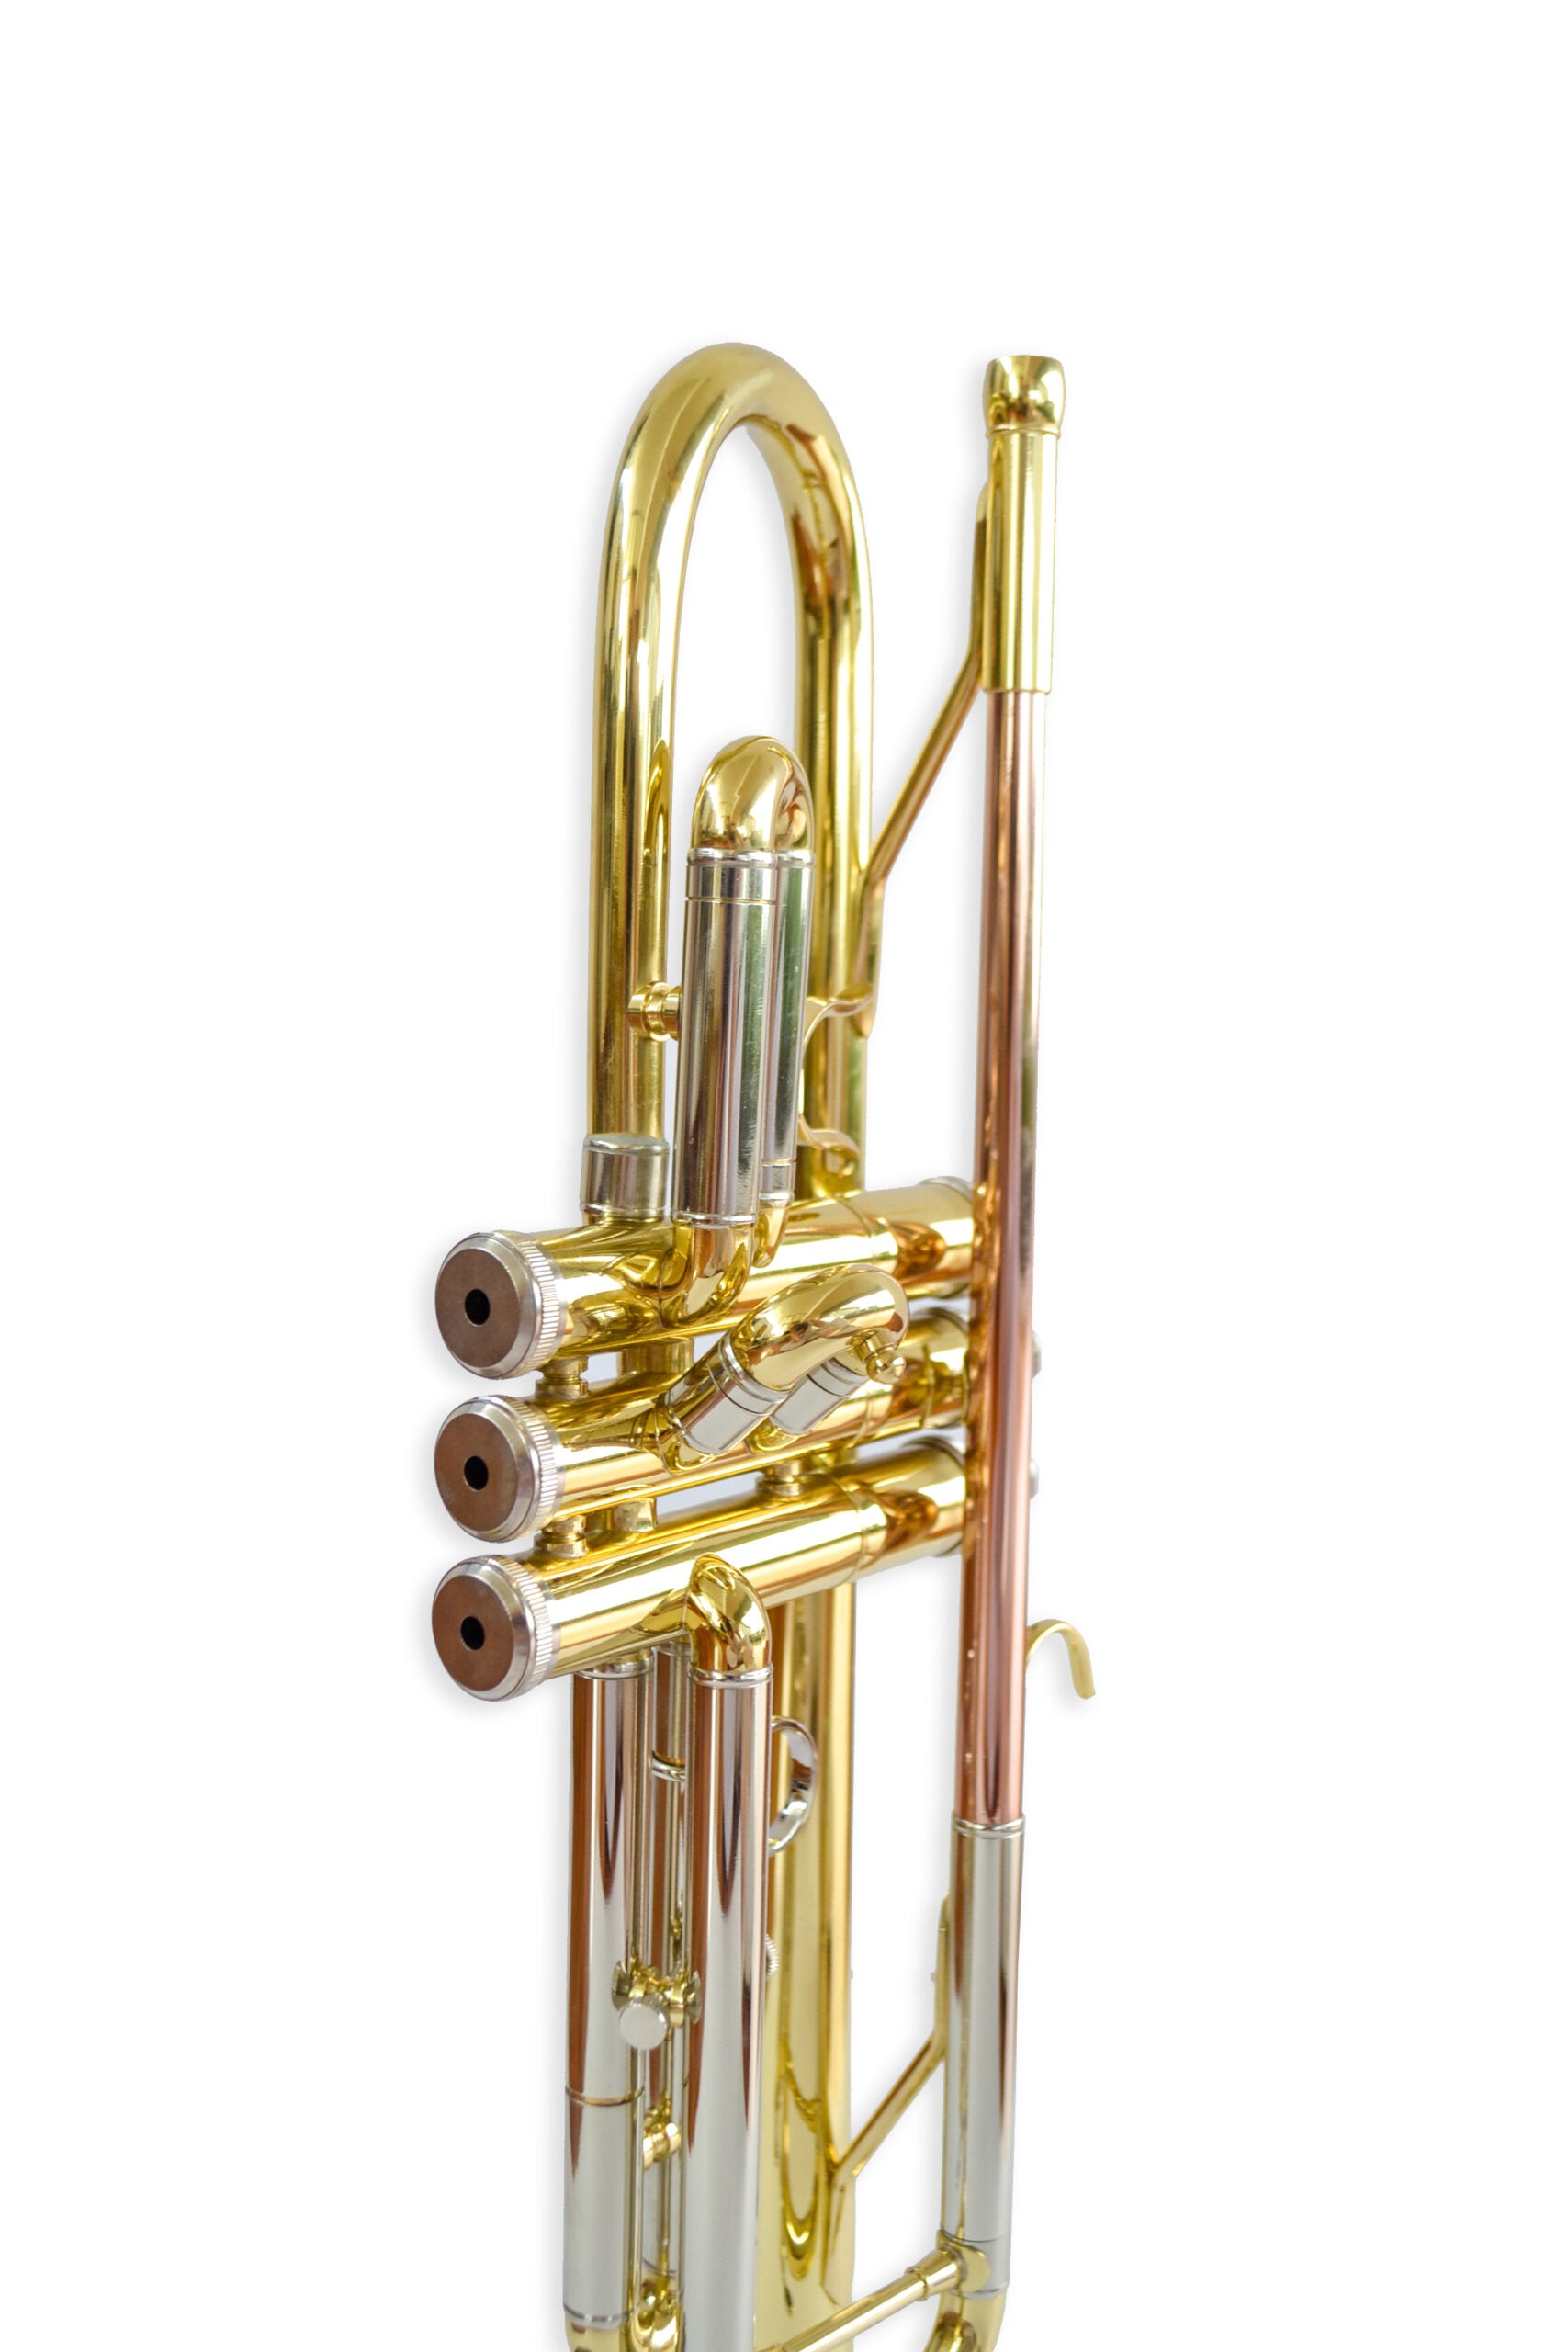 Trompeta Aristton Bb 6419L - Incluye Accesorios